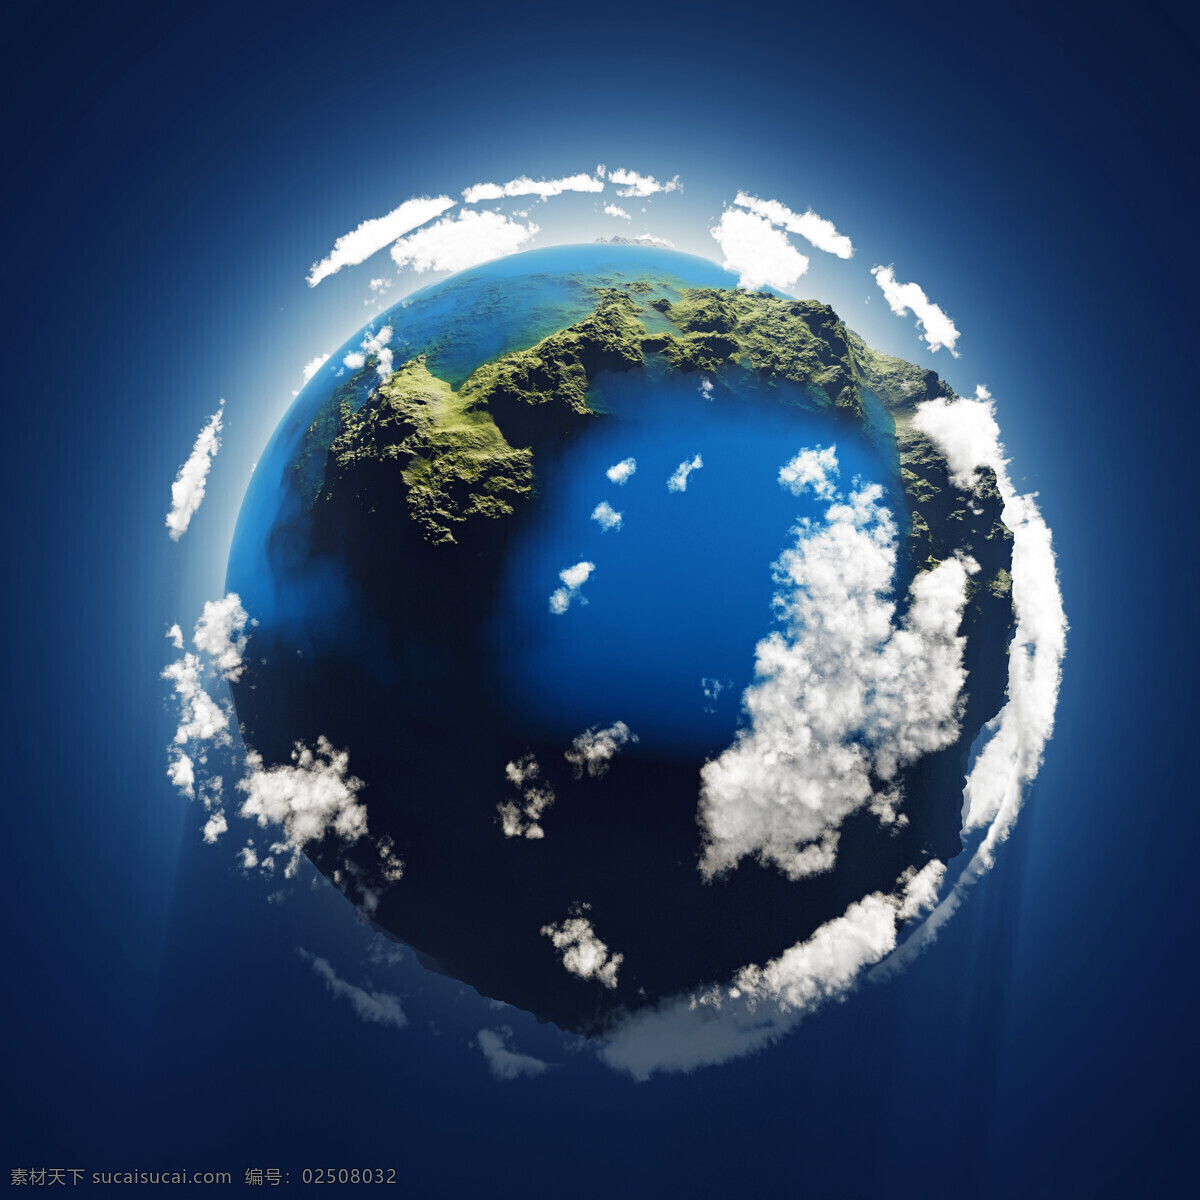 蓝色的地球 蓝色 地球 还有 云朵 蓝色背景 环保 节能减排 节约用水 其他类别 生活百科 黑色